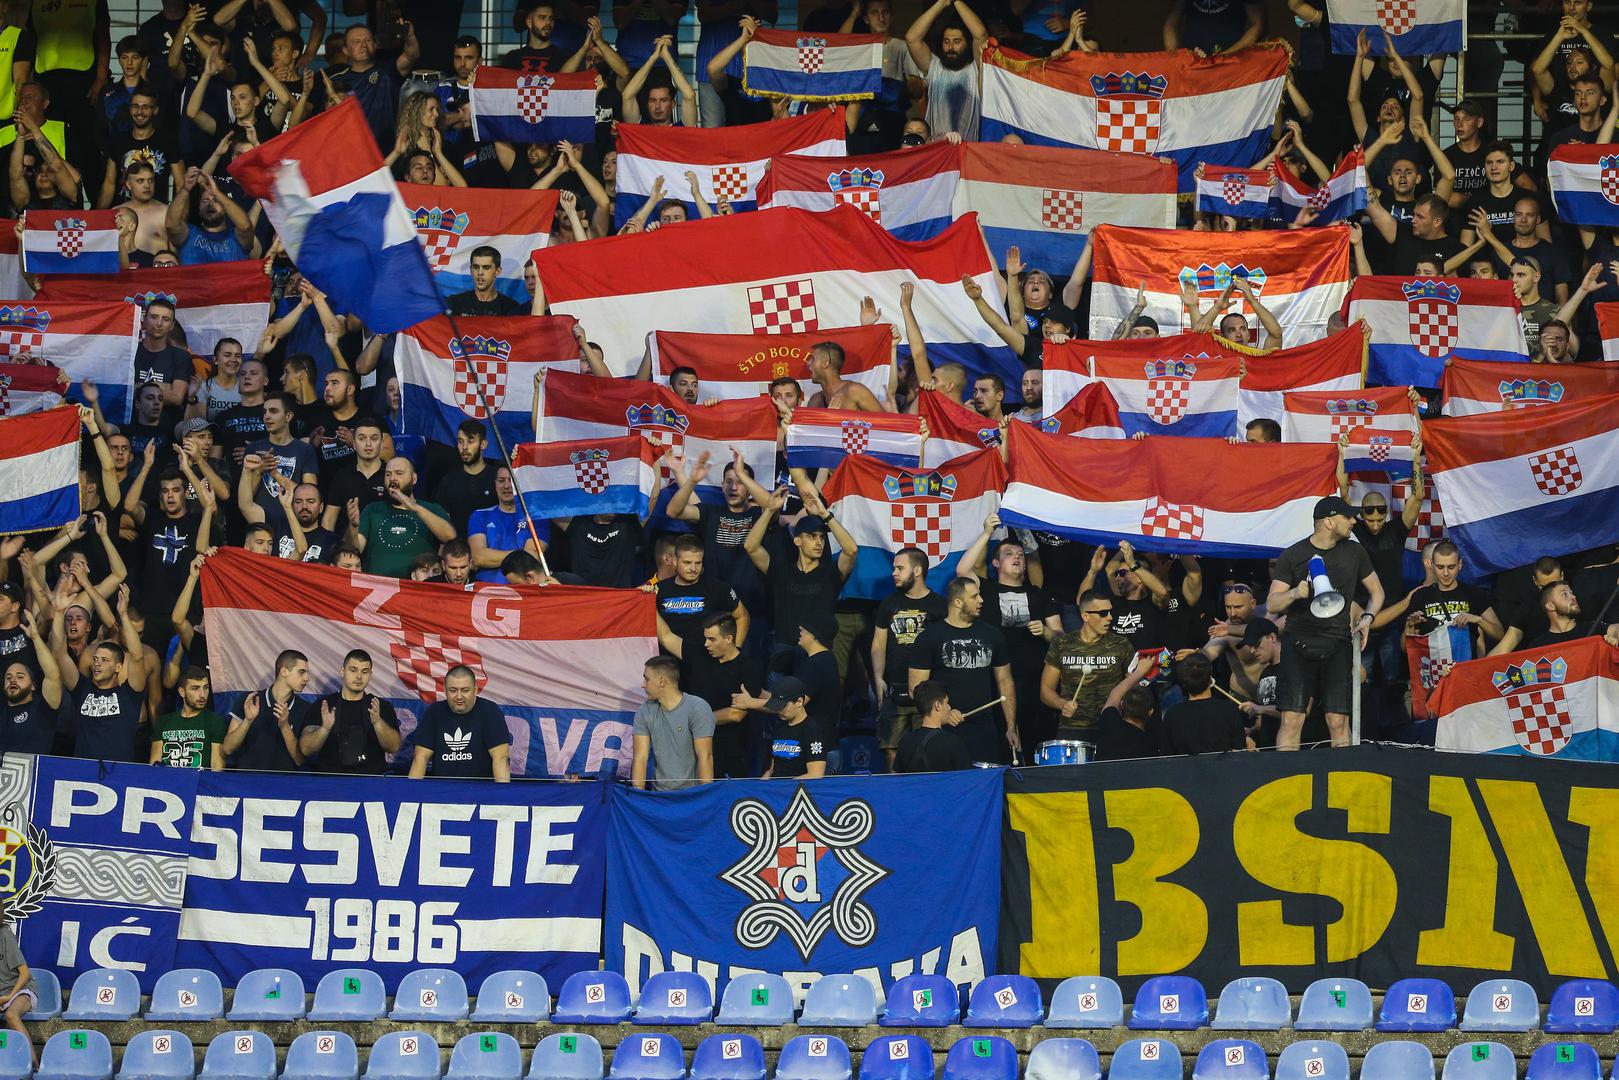 Vijorile su se i hrvatske zastave